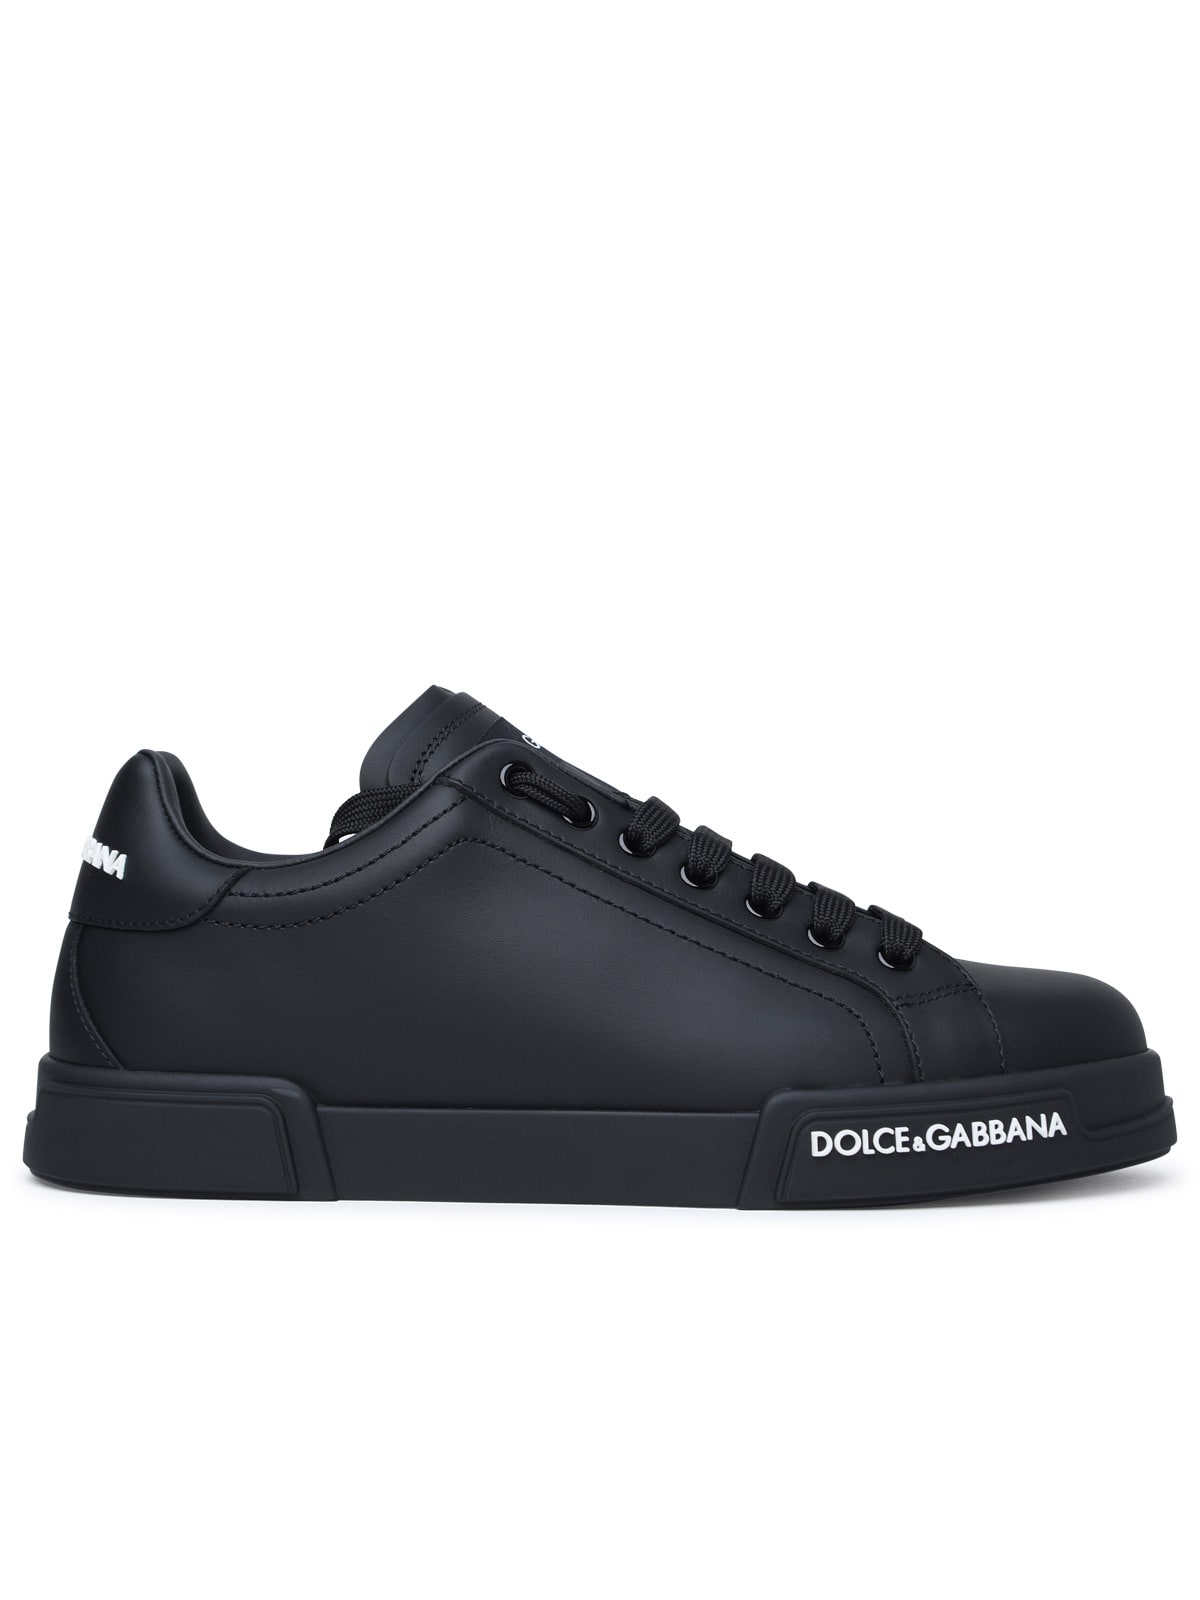 portofino Black Calf Leather Sneakers